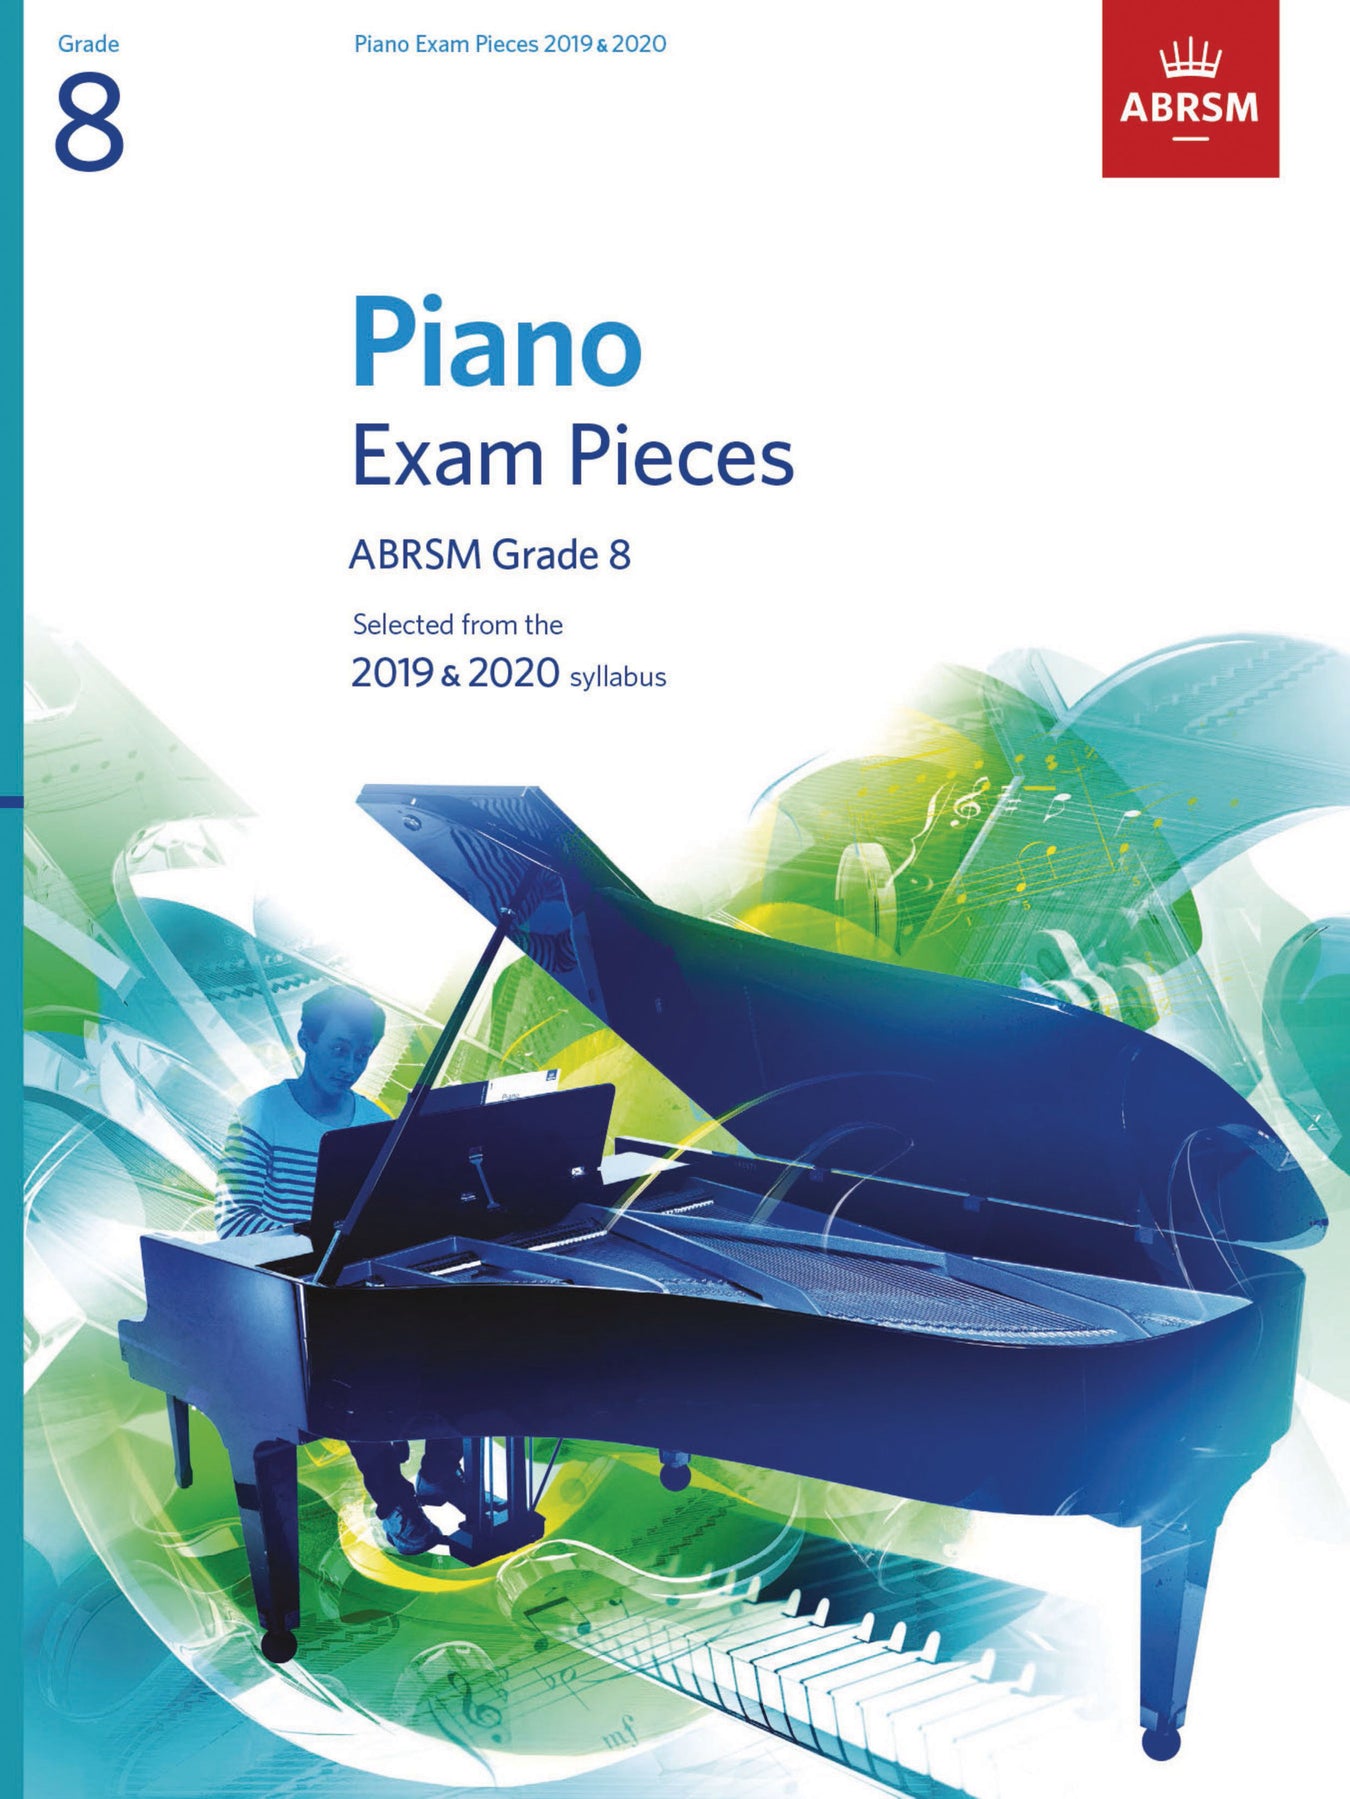 ABRSM 2019-2020 Piano Exam Pieces